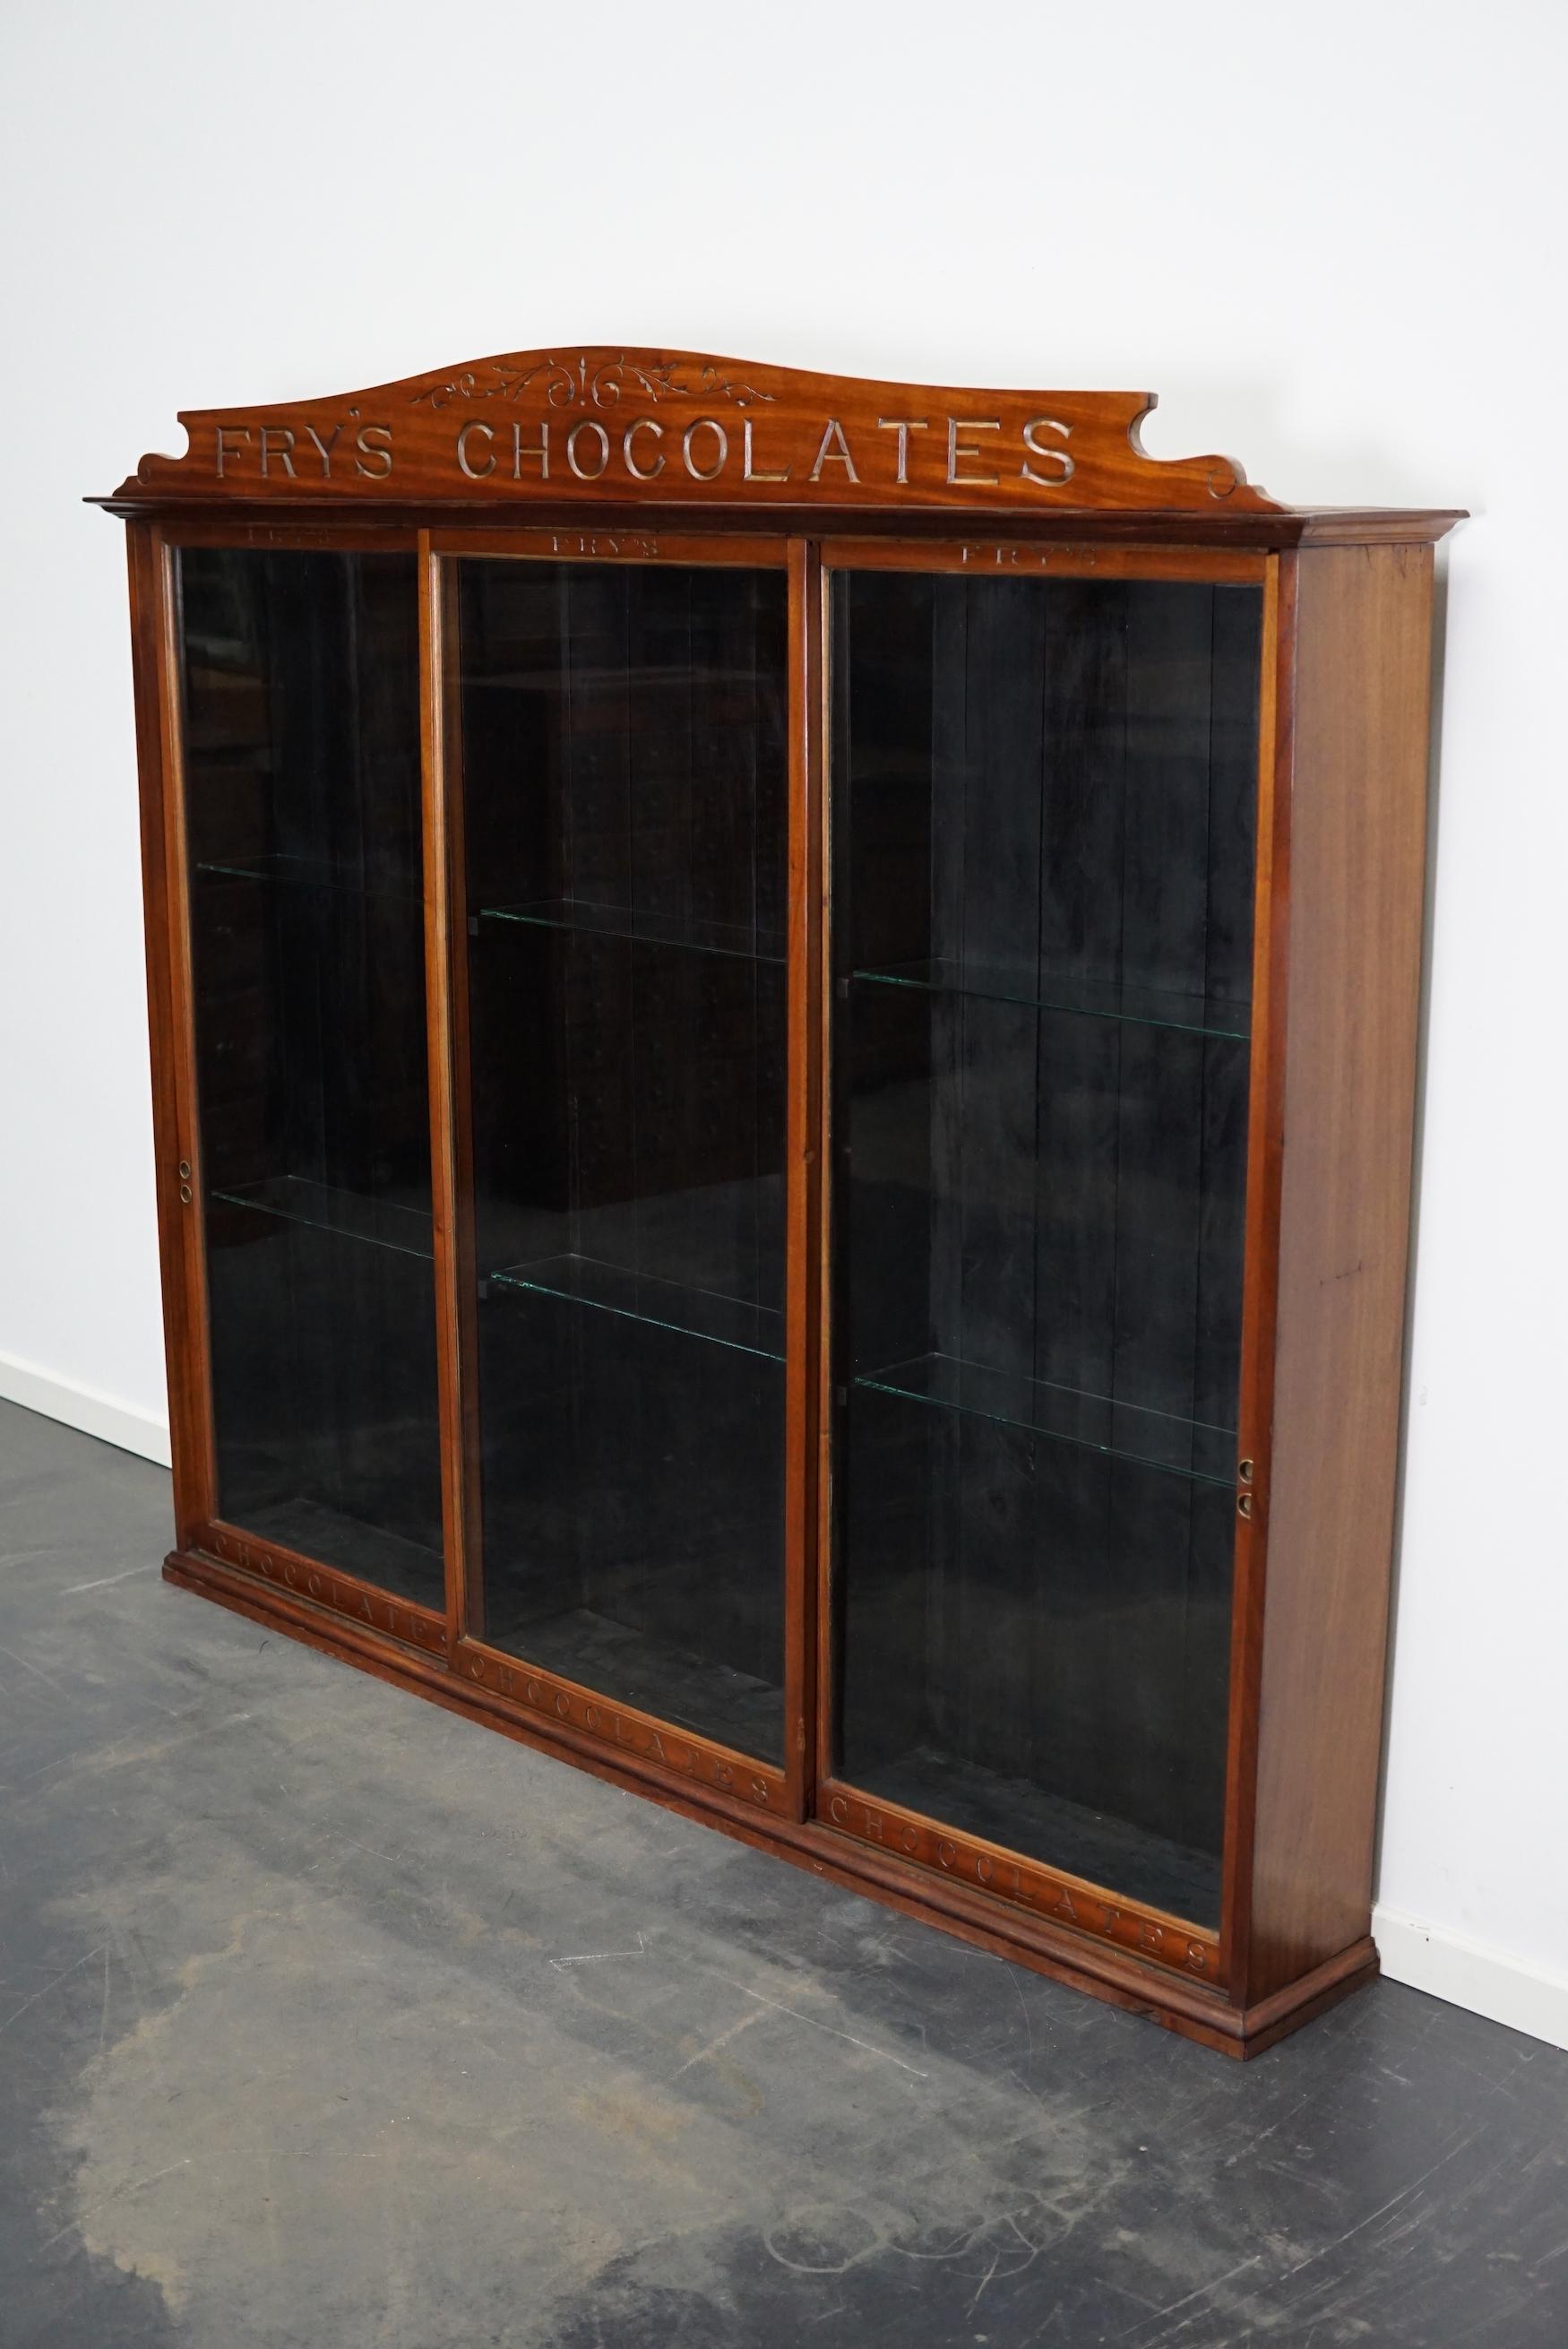 Vitrina o vitrina de caoba para tienda de chocolates Fry's, finales del siglo XIX Victoriano tardío en venta